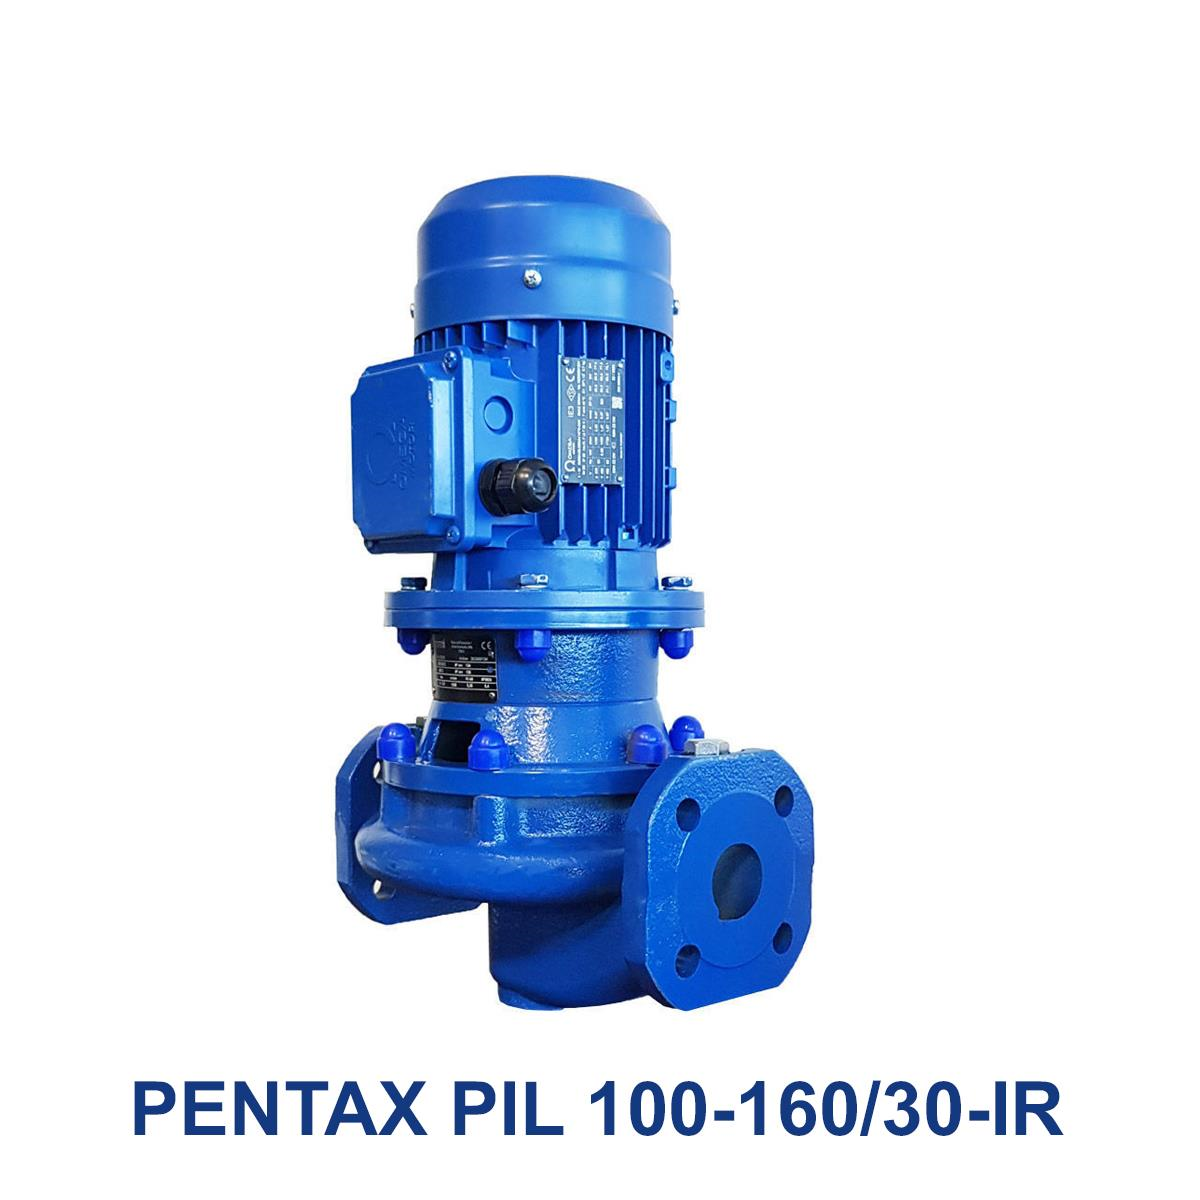 PENTAX-PIL-100-160-30-IR